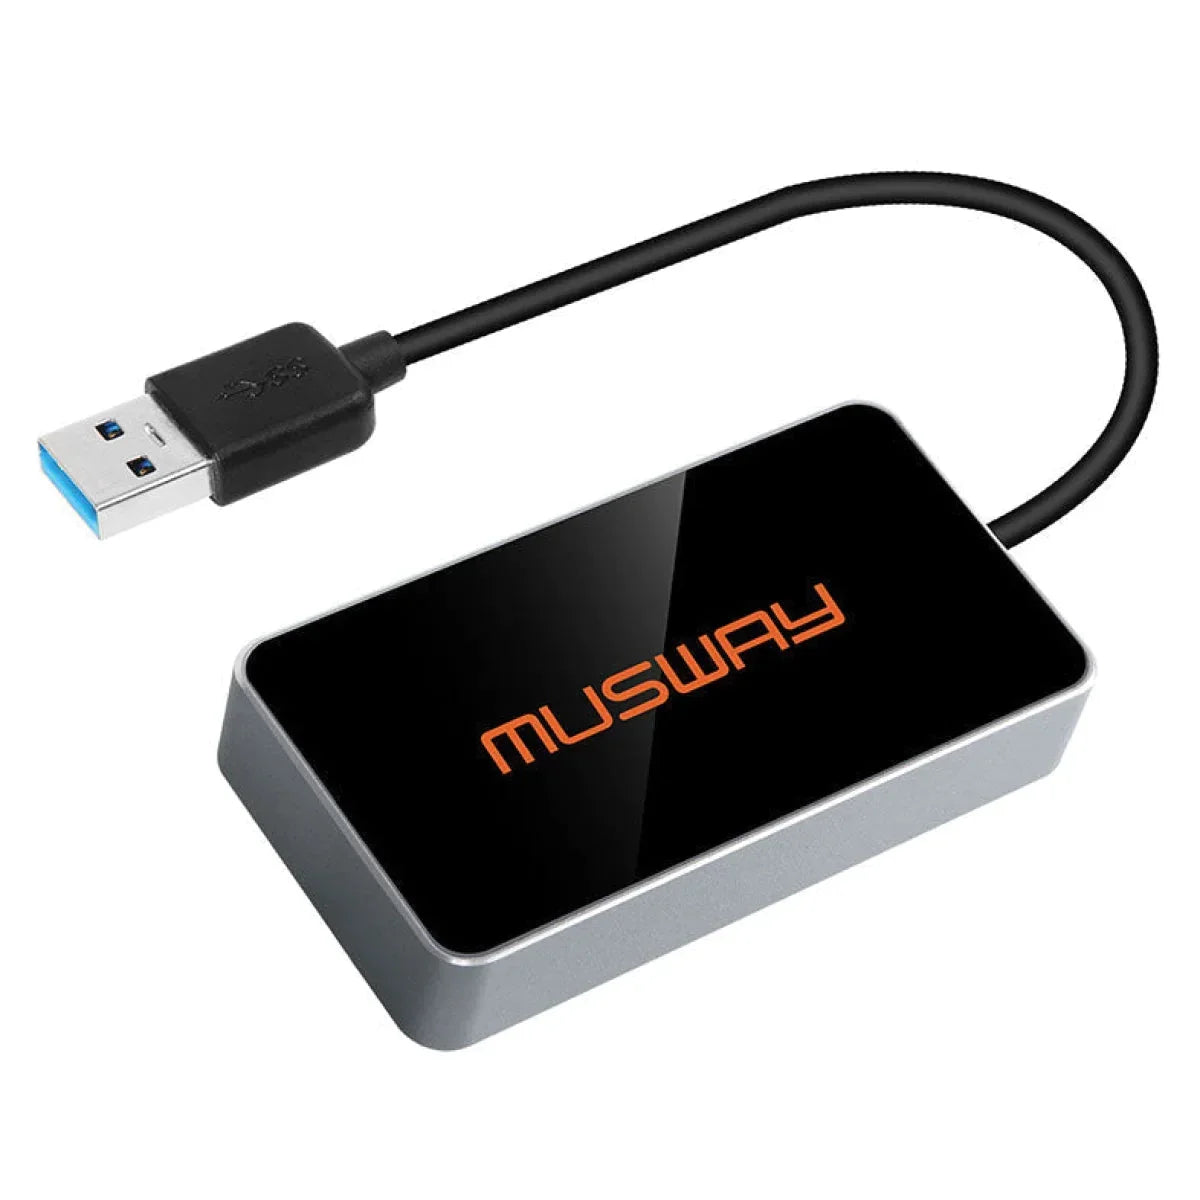 Musway-BTS-HD Bluetooth USB Dongle-Verstärker-Zubehör-Masori.de